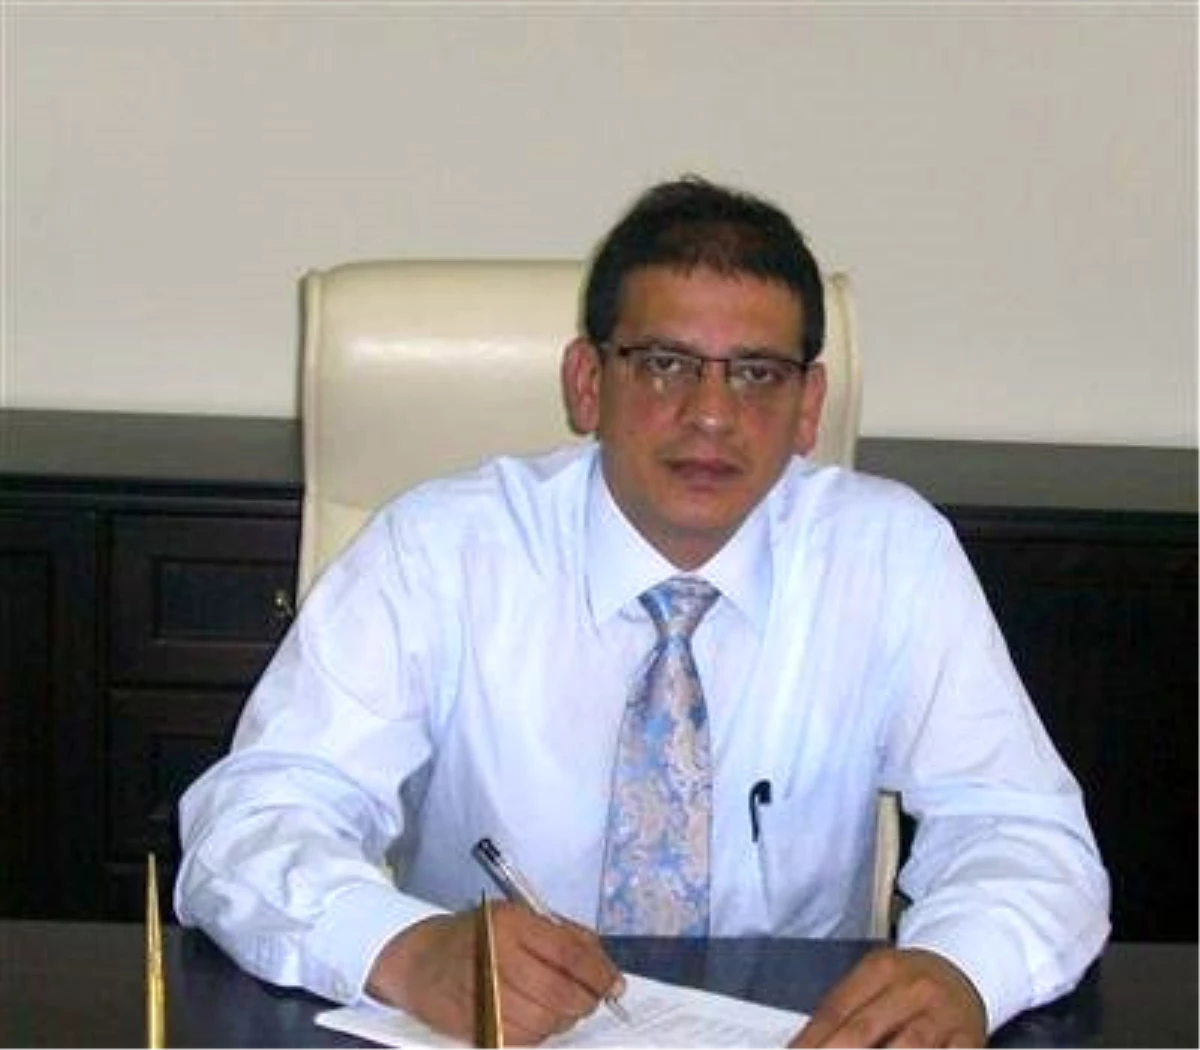 Kars Sağlık Müdürü Dr. Hasan Tuncer İshale Karşı Vatandaşları Uyardı